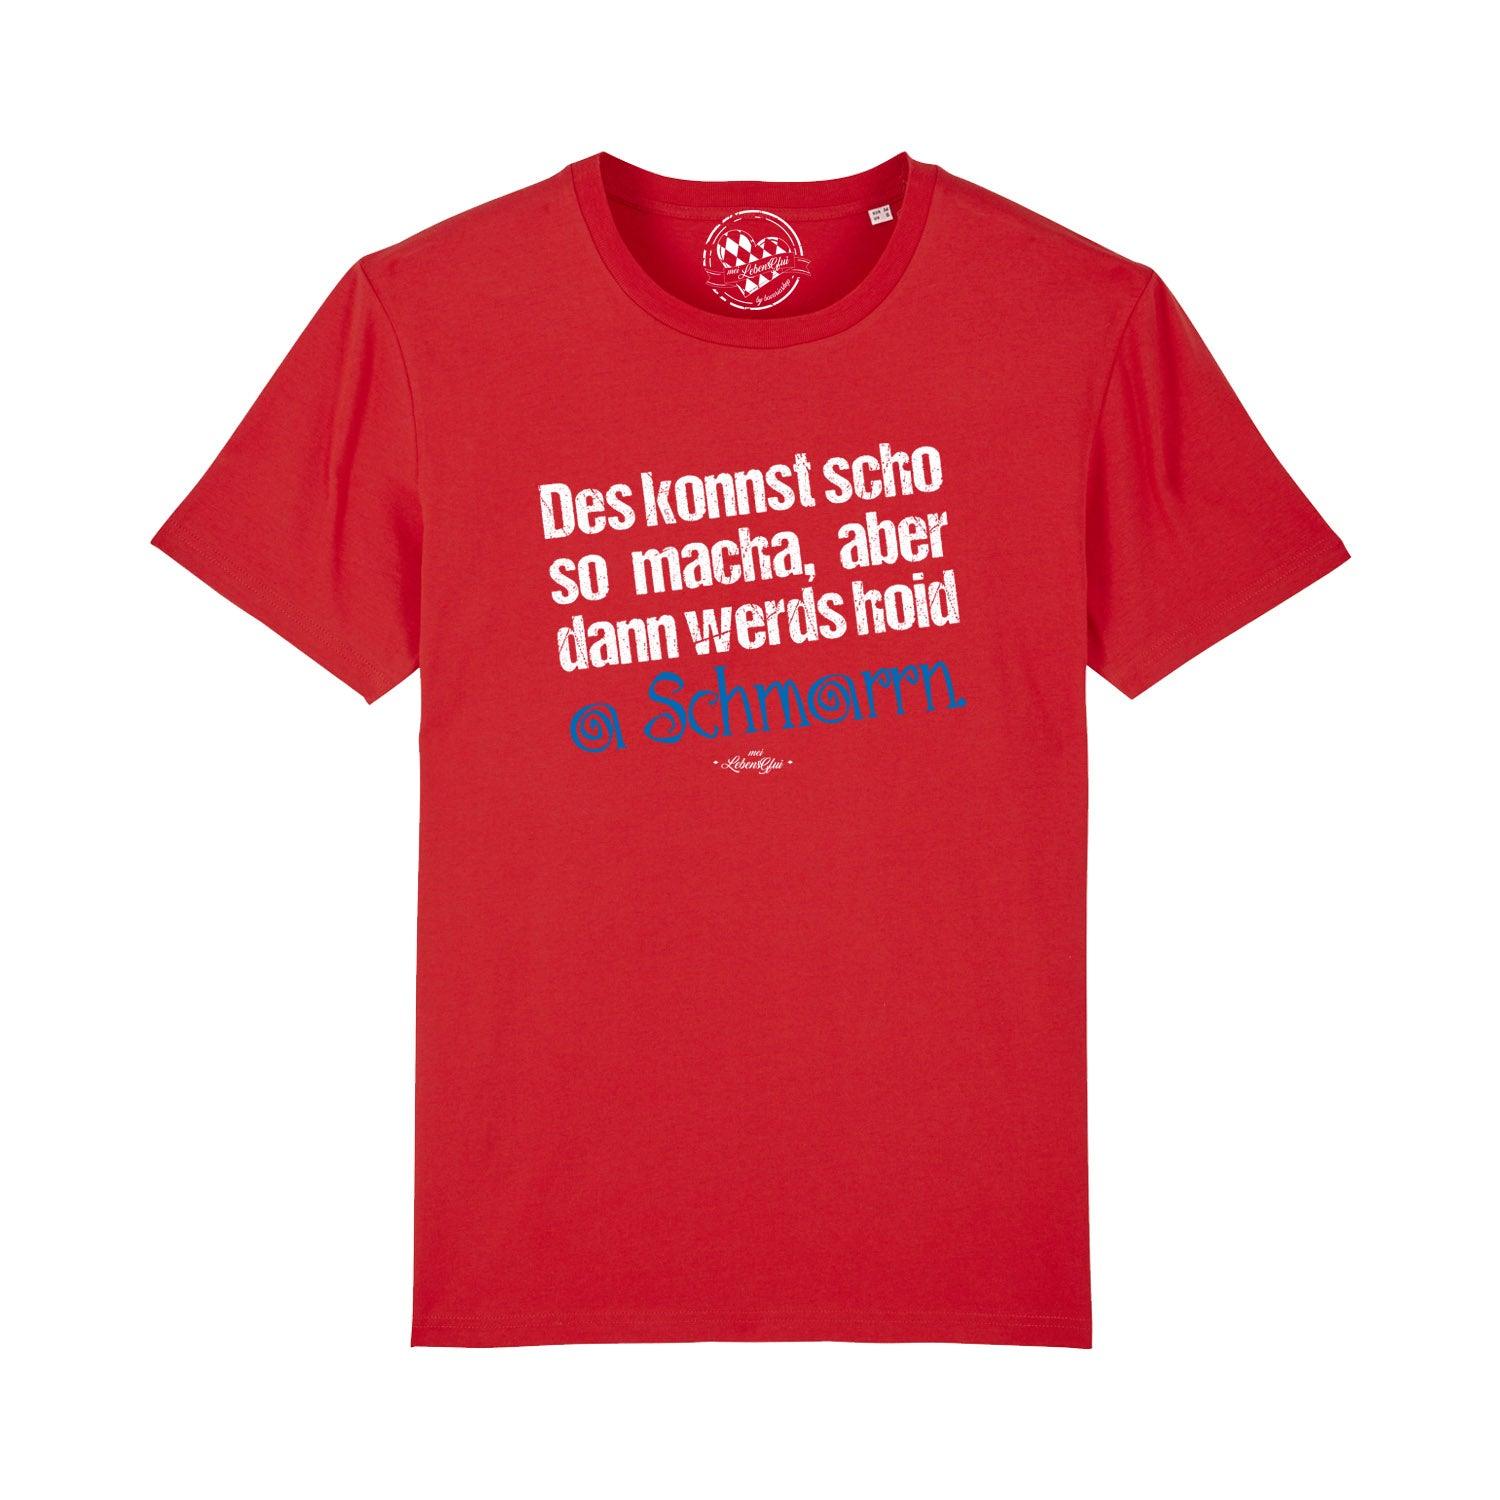 Herren T-Shirt "Konnst scho so macha" - bavariashop - mei LebensGfui